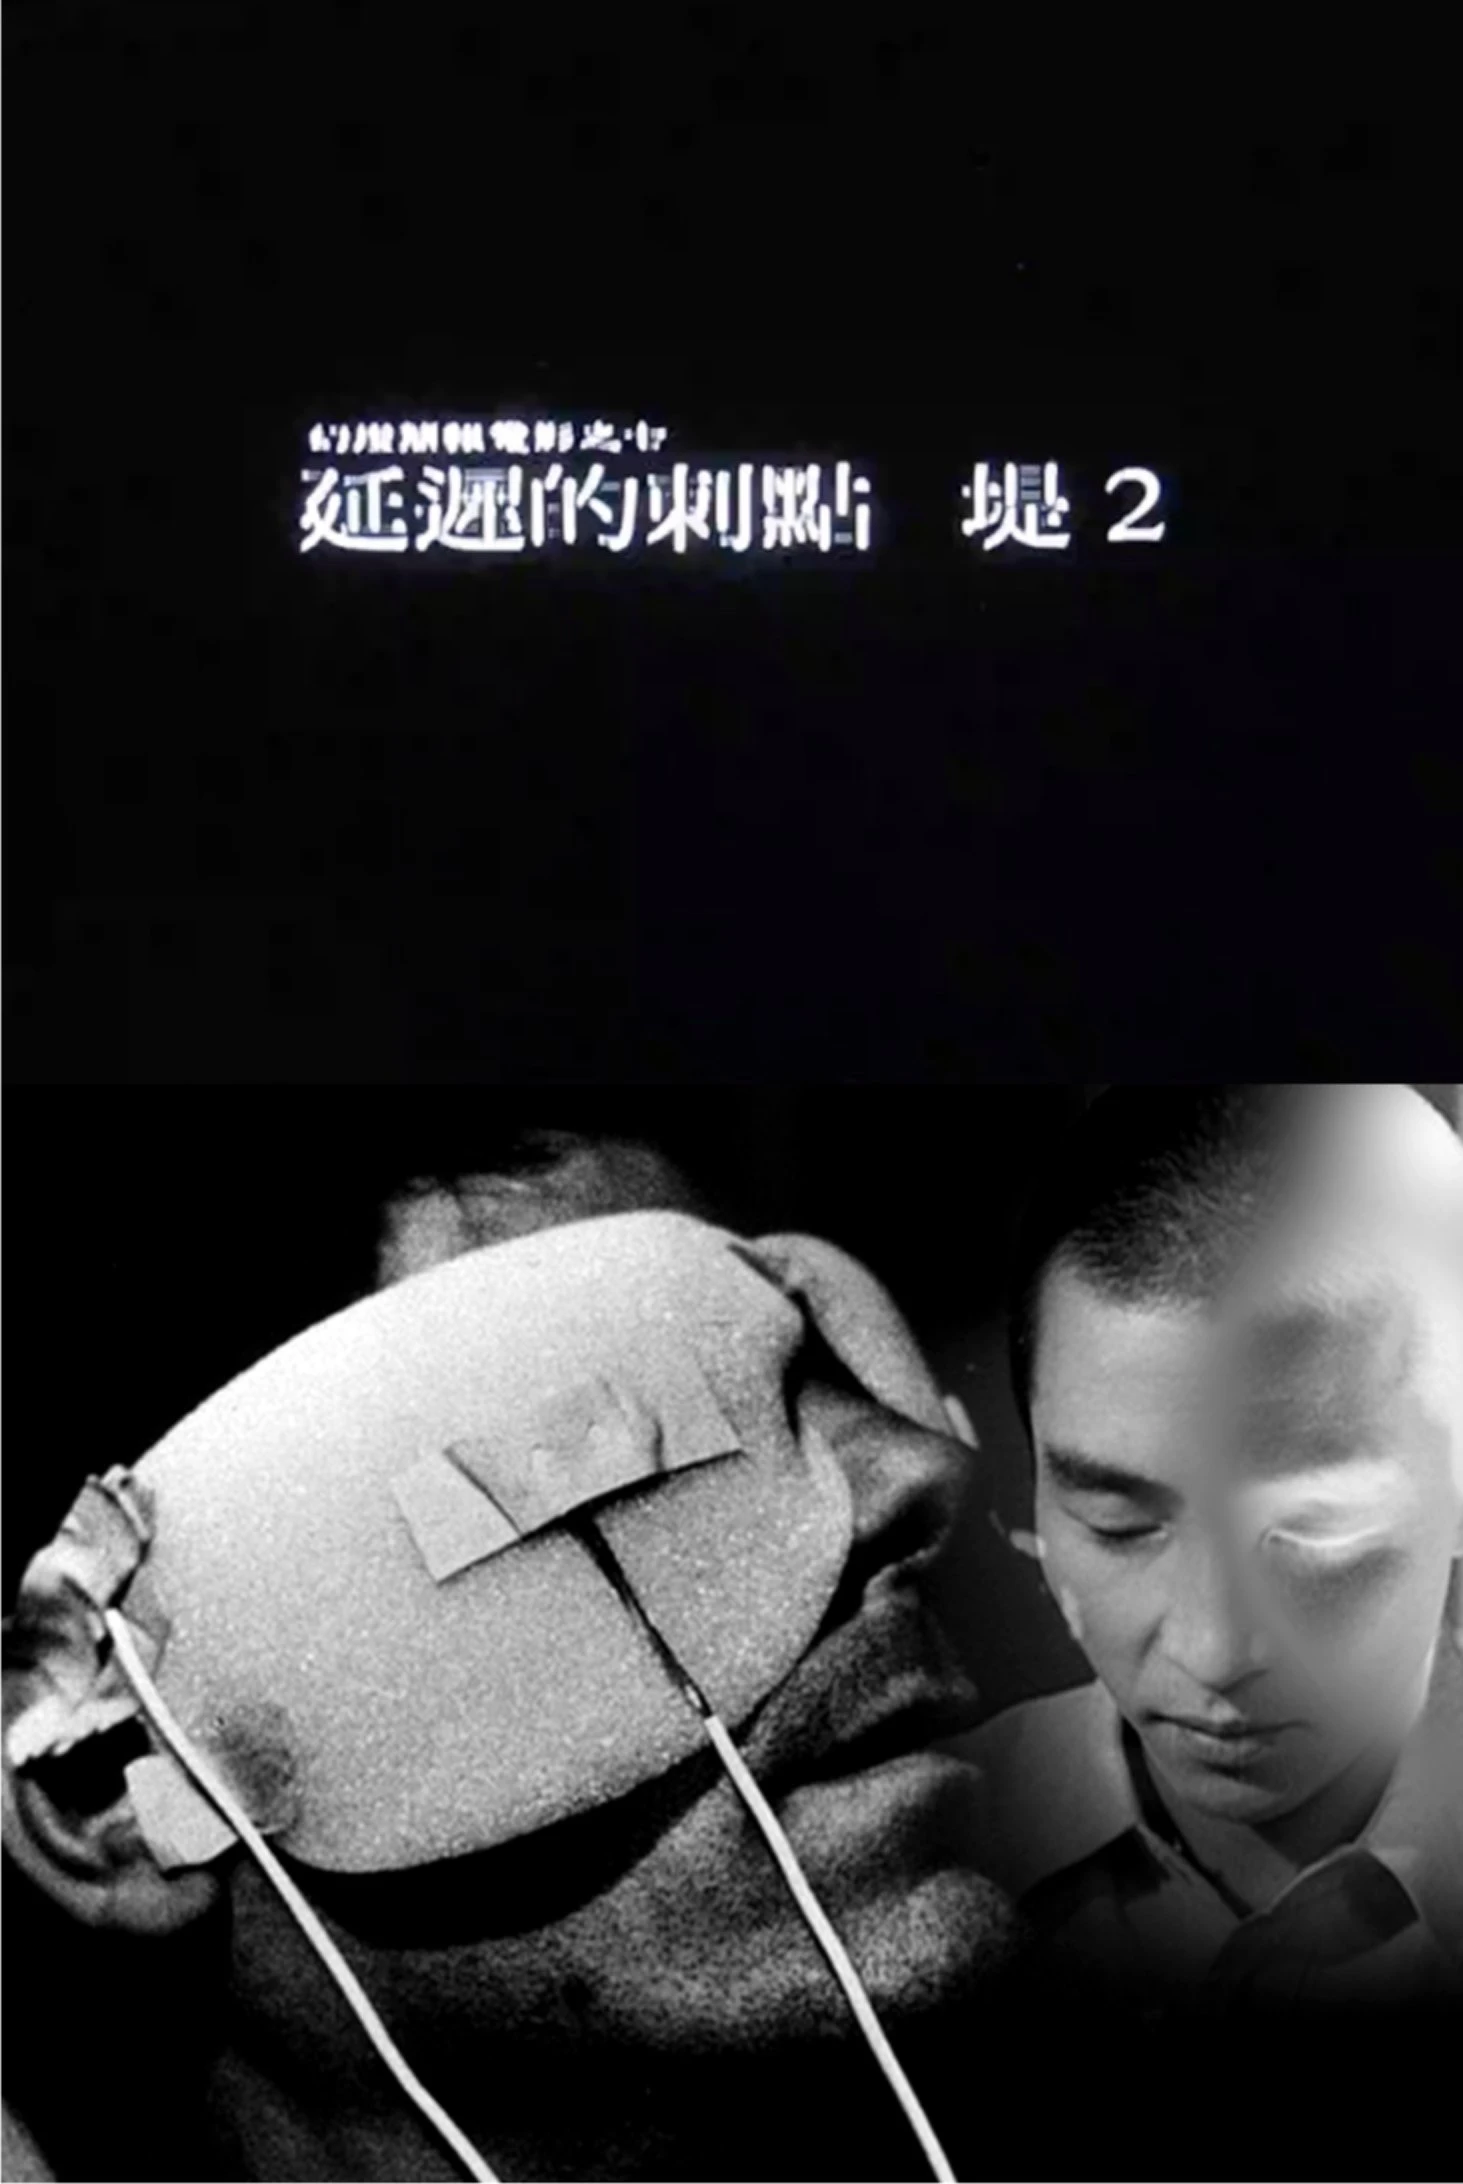 「幻燈簡報電影」系列之七《延遲的刺點——堤2》數位單頻投影版，2015-圖片